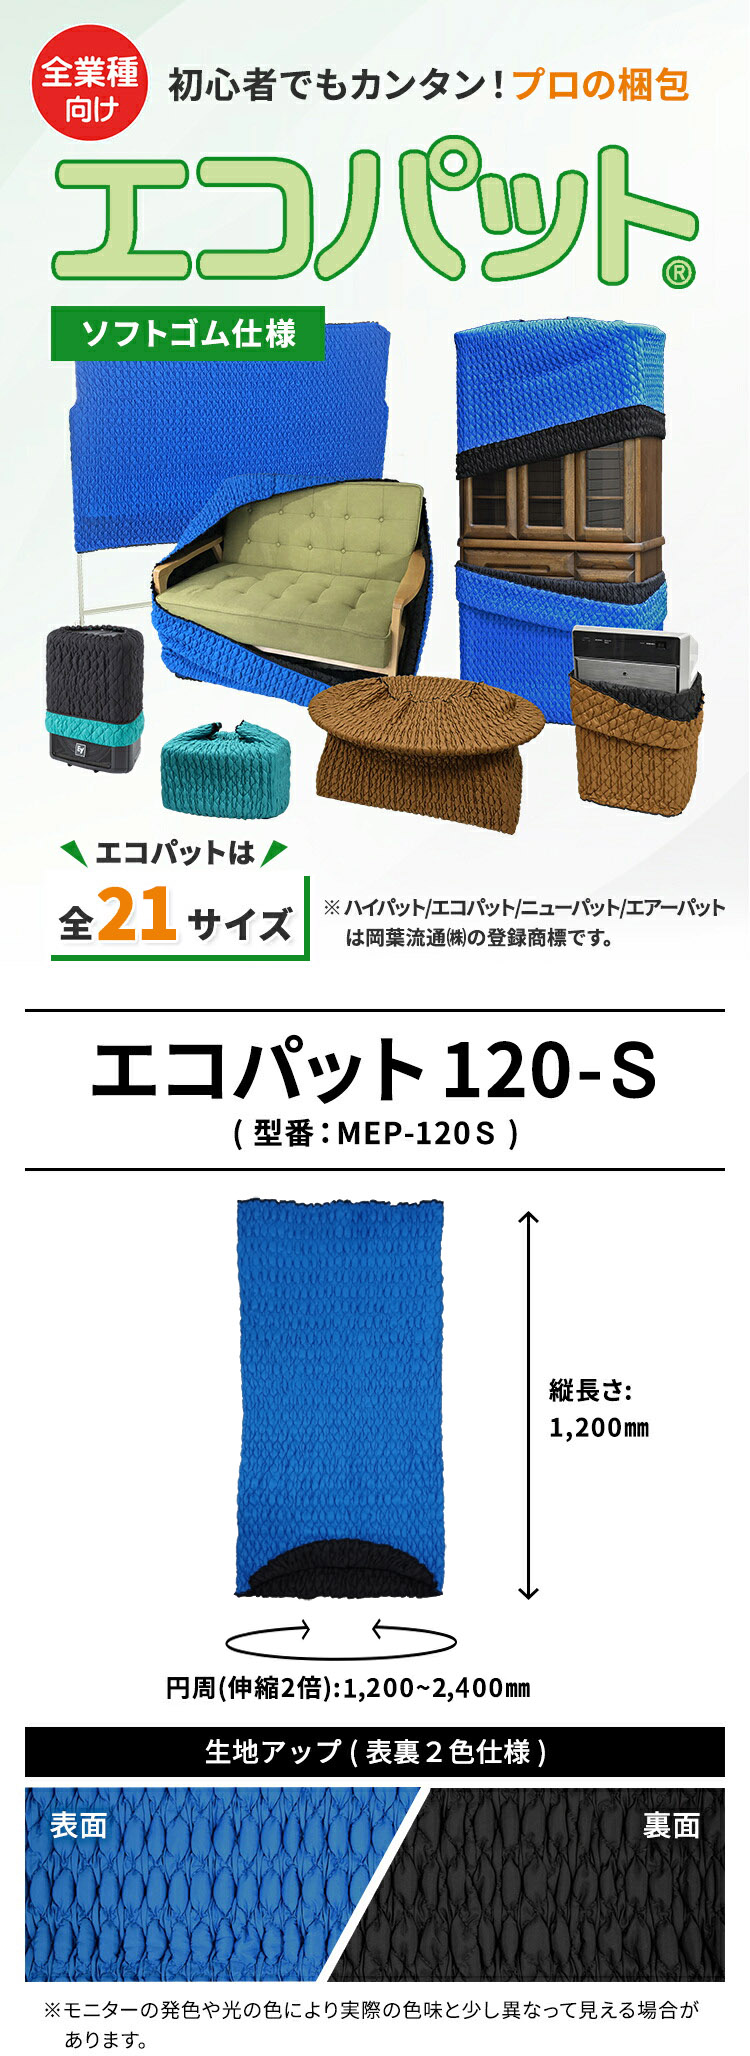 (個別送料2000円)(直送品)アサヒ Jキルトフィットカバー HP-140L-B - 1